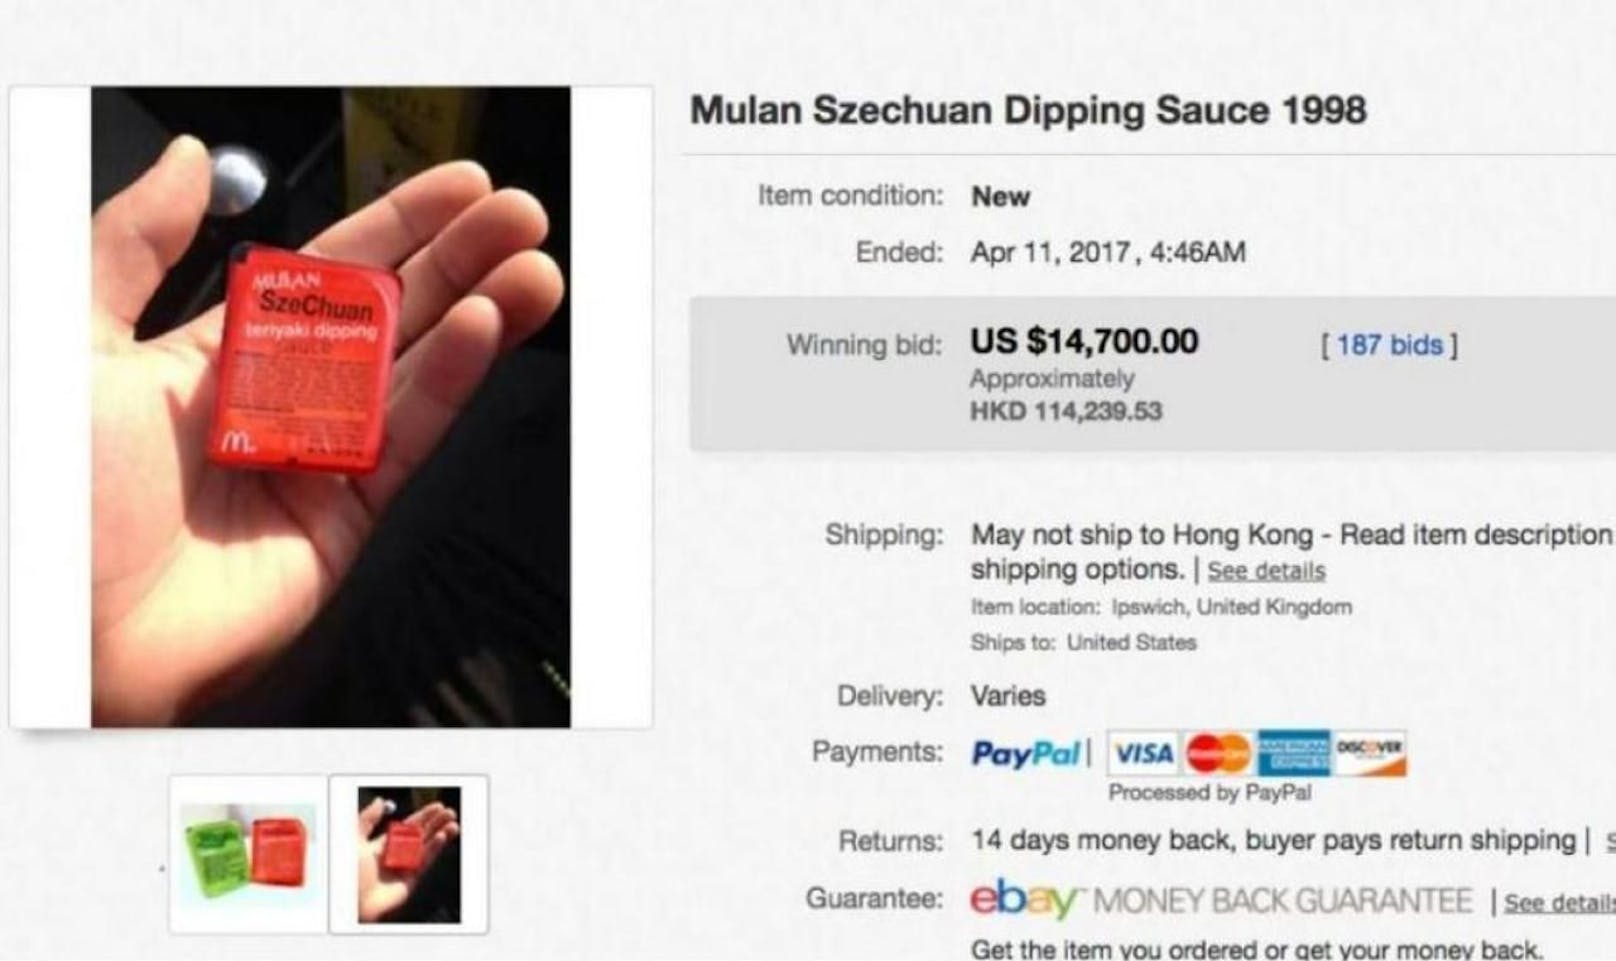 Für unglaubliche 14.700 Dollar wurde das uralte Saucen-Packerl versteigert.